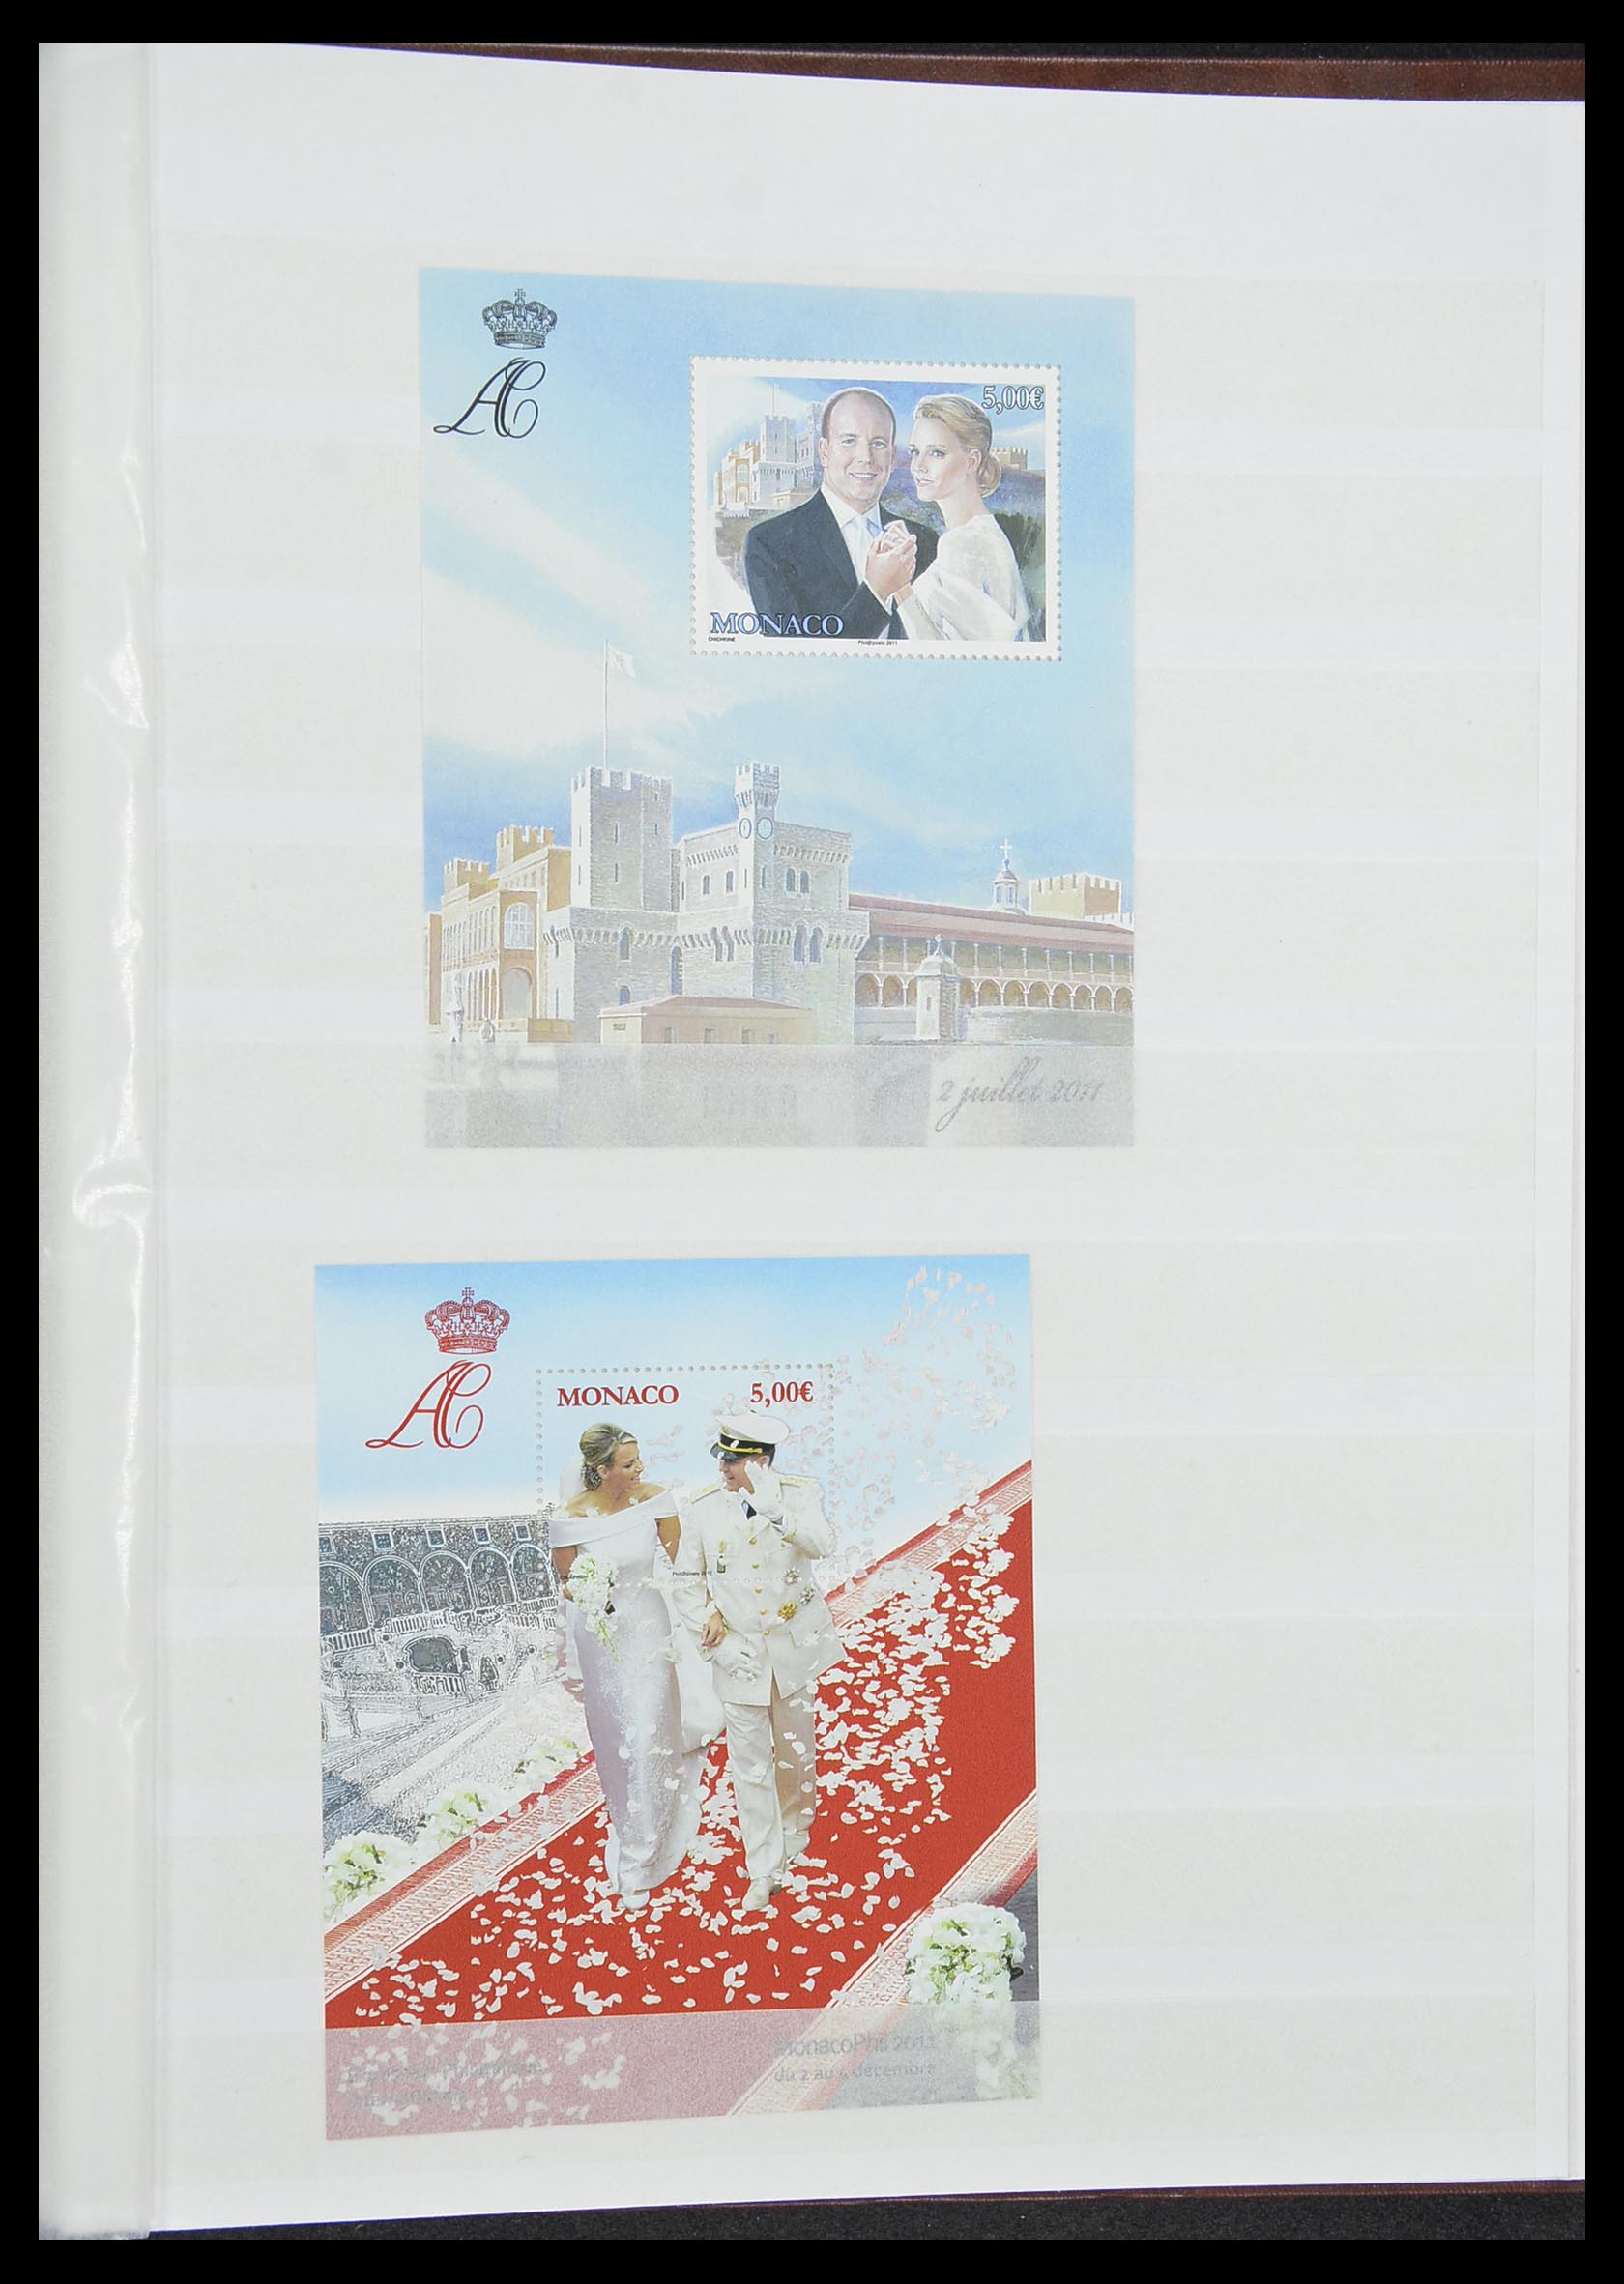 33833 054 - Stamp collection 33833 Monaco souvenir sheets 1979-2015.